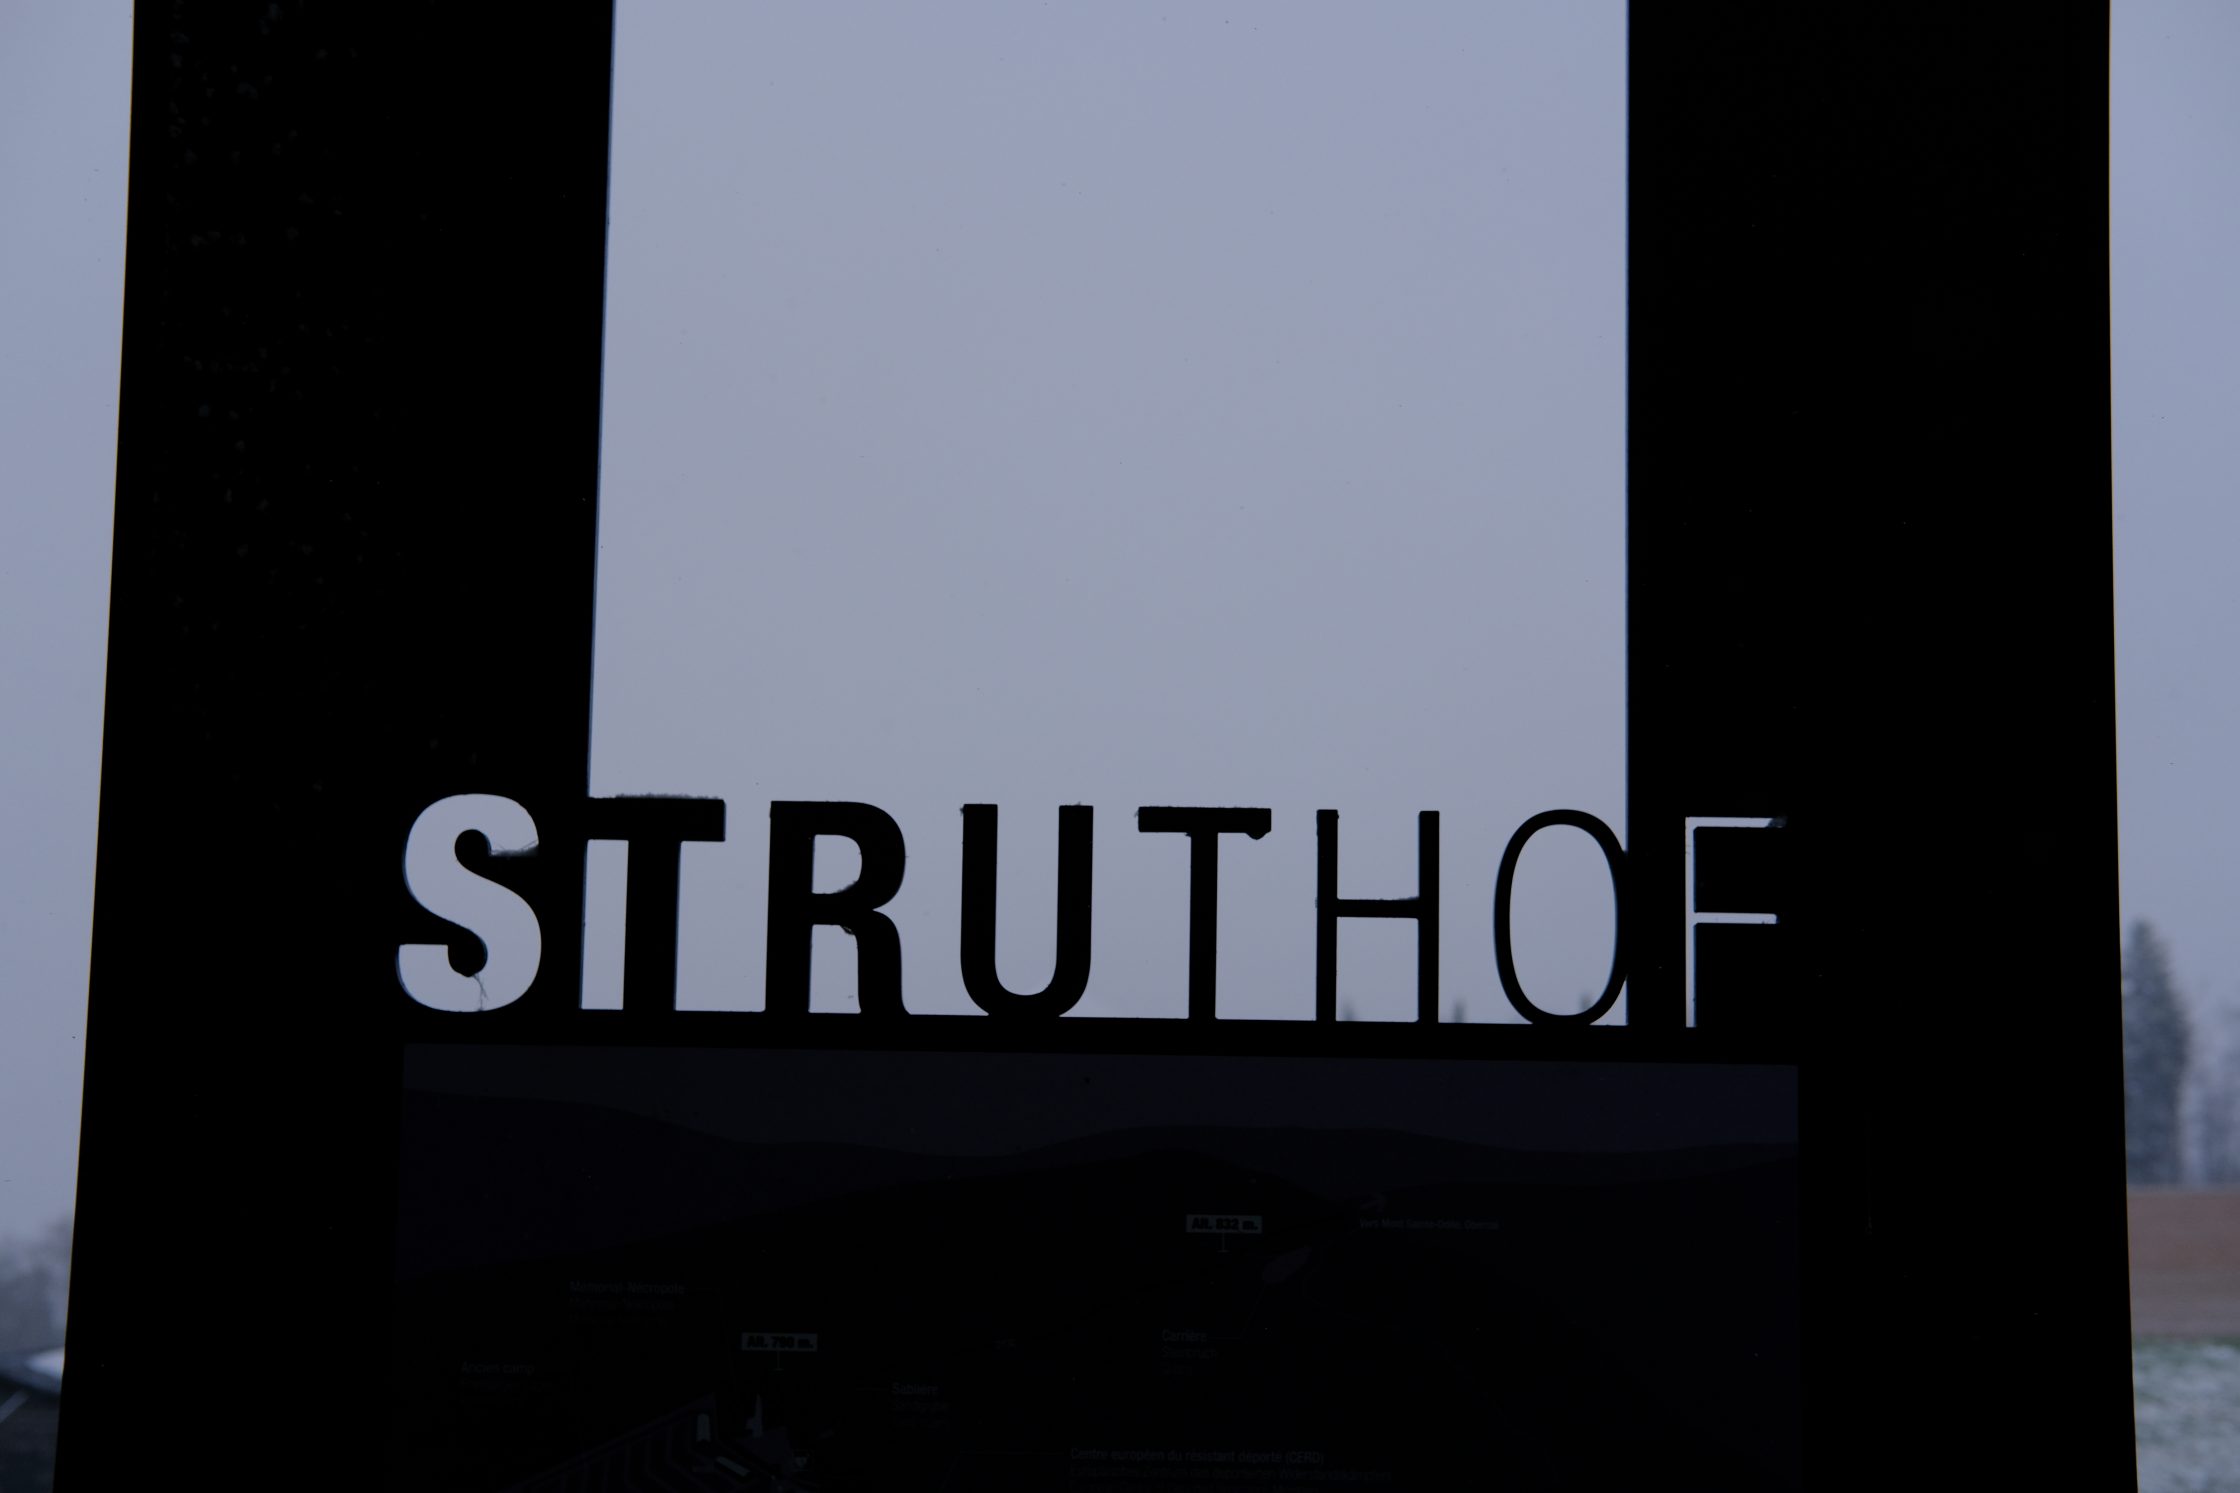 Le Struthof, le seul camp de concentration sur le territoire français